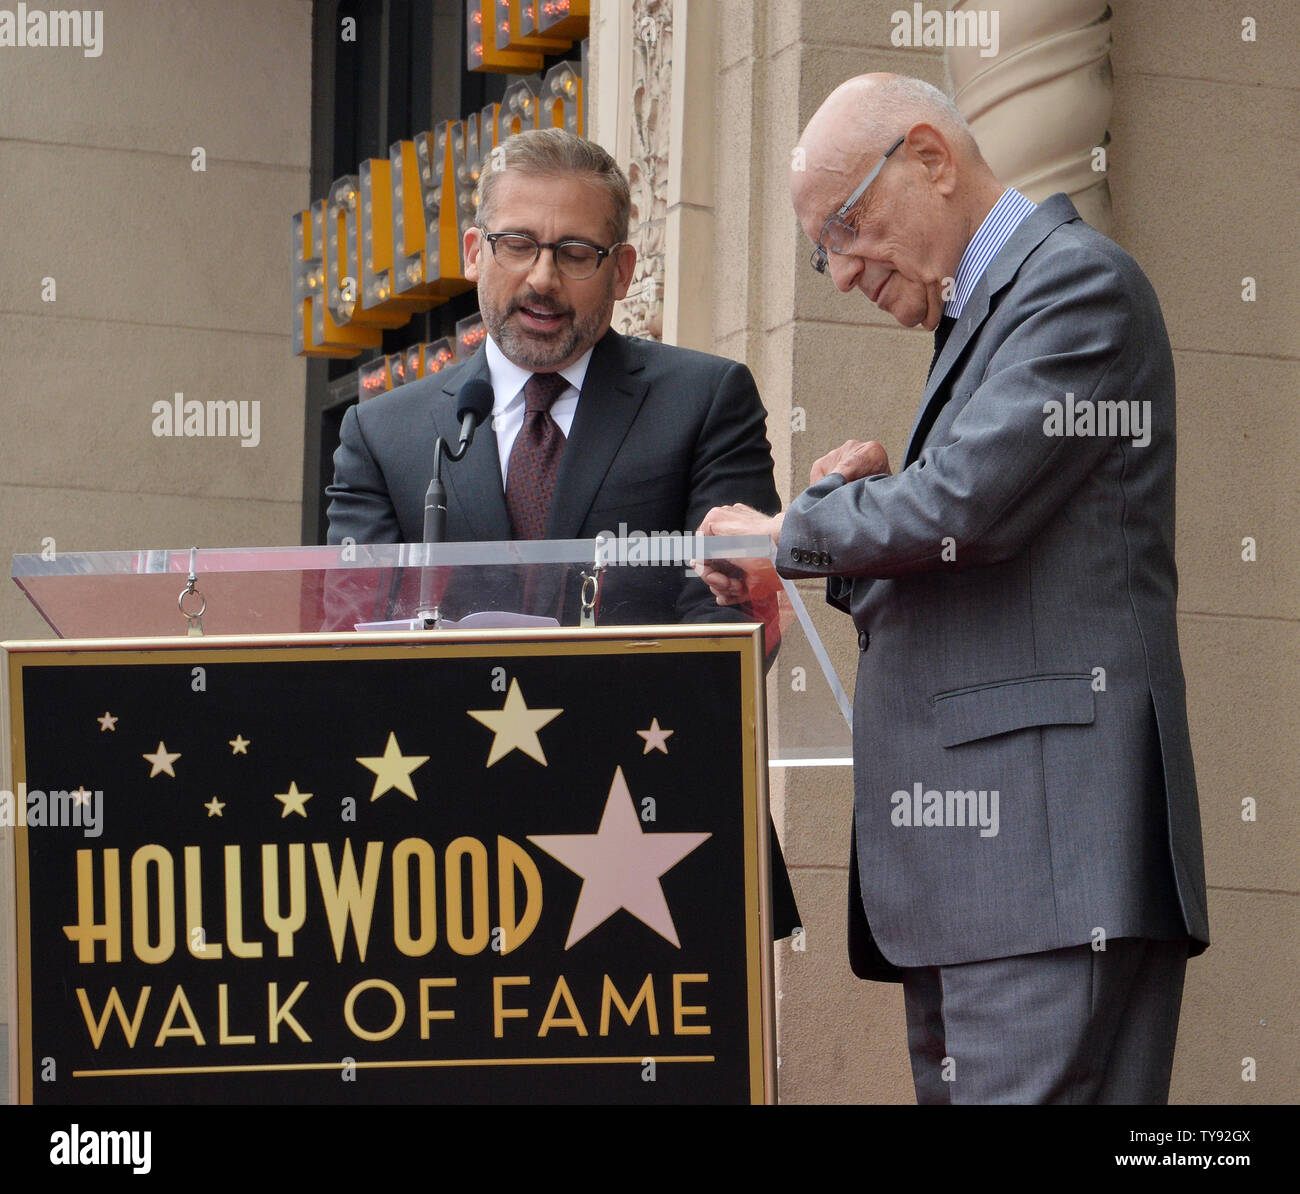 Schauspieler Alan Arkin (R) reagiert auf Kommentare von dem Schauspieler Steve Carrell während einer Zeremonie ihn ehrt mit dem 2.665 th Stern auf dem Hollywood Walk of Fame in Los Angeles am 7. Juni 2019. Foto von Jim Ruymen/UPI Stockfoto